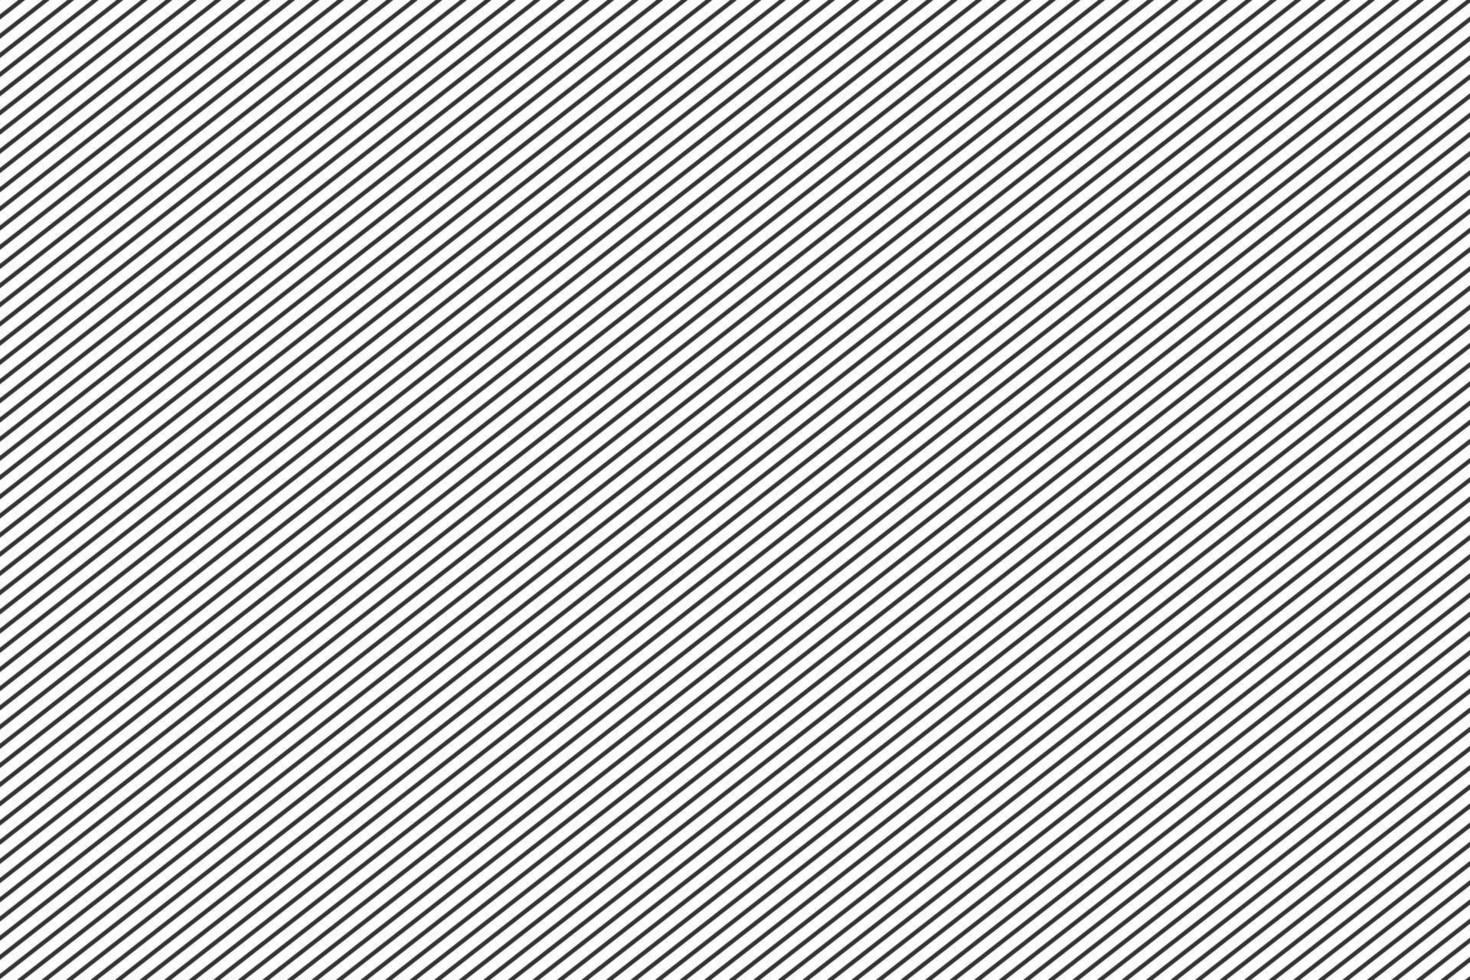 abstract zwart diagonaal streep lijnen patroon ontwerp. vector